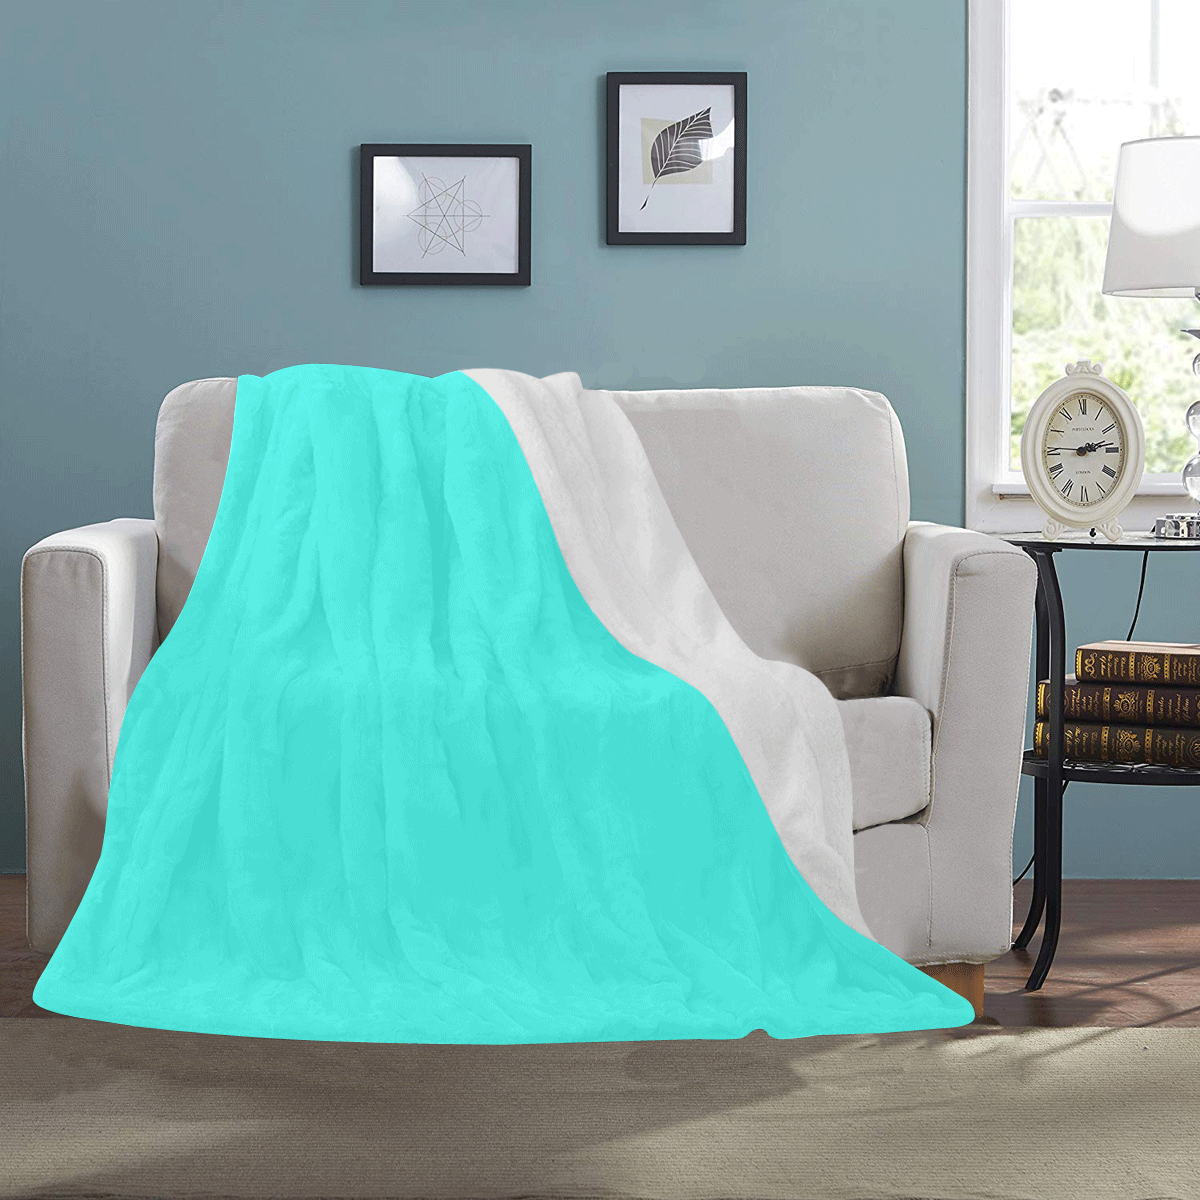 Neon Turquoise Ultra-Soft Micro Fleece Blanket 50"x60"